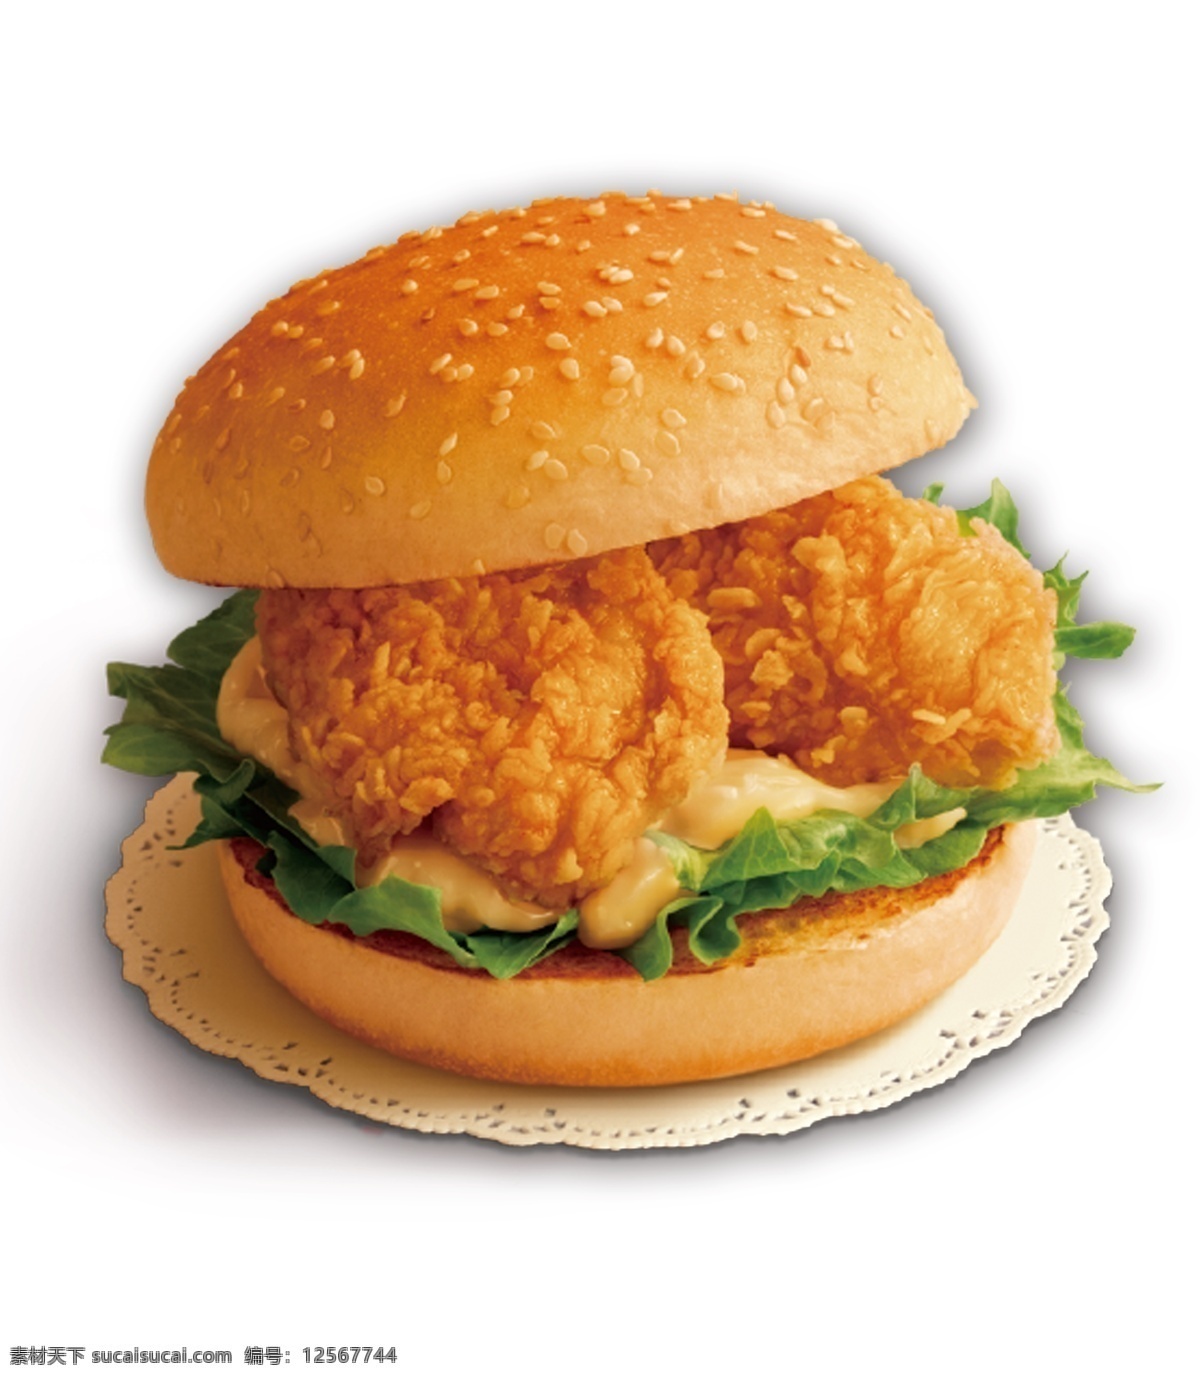 鸡腿堡 快餐 汉堡 美式 分层 套餐 广告 dm 菜单 快餐店 饮品店 西餐 快餐图片